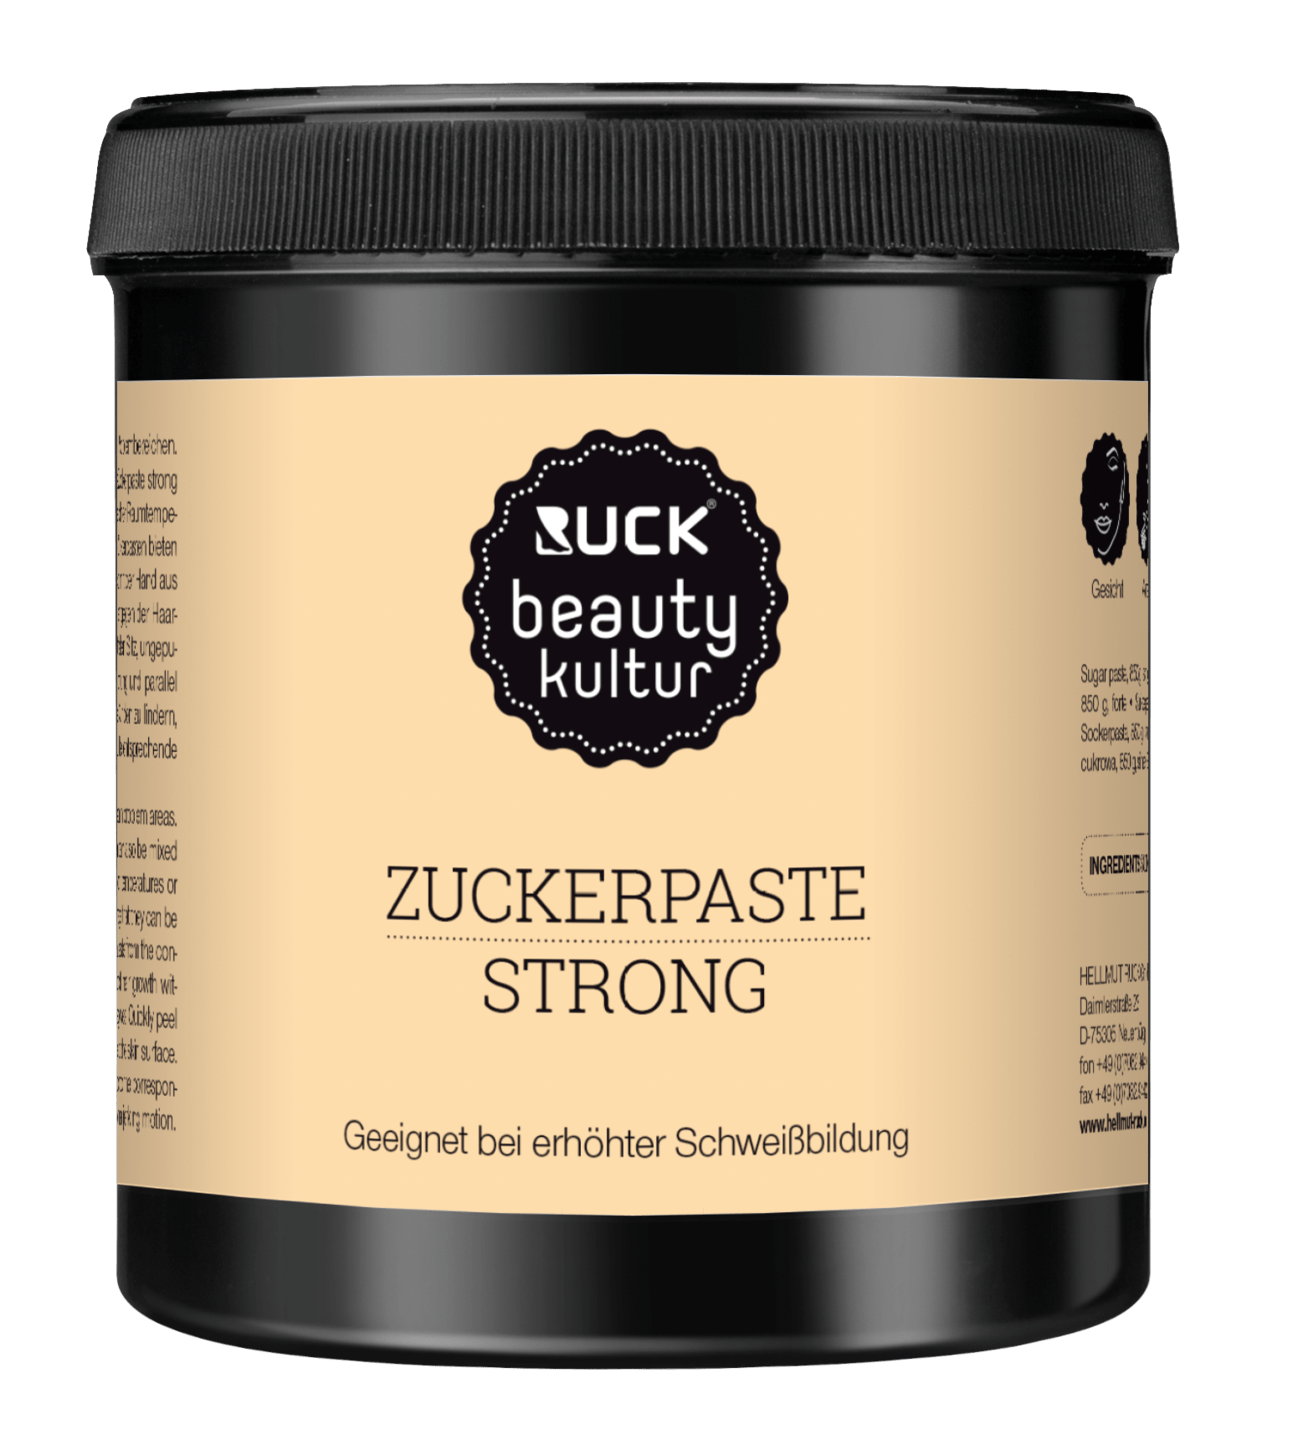 RUCK beautykultur - Zuckerpaste, 850 g in orange